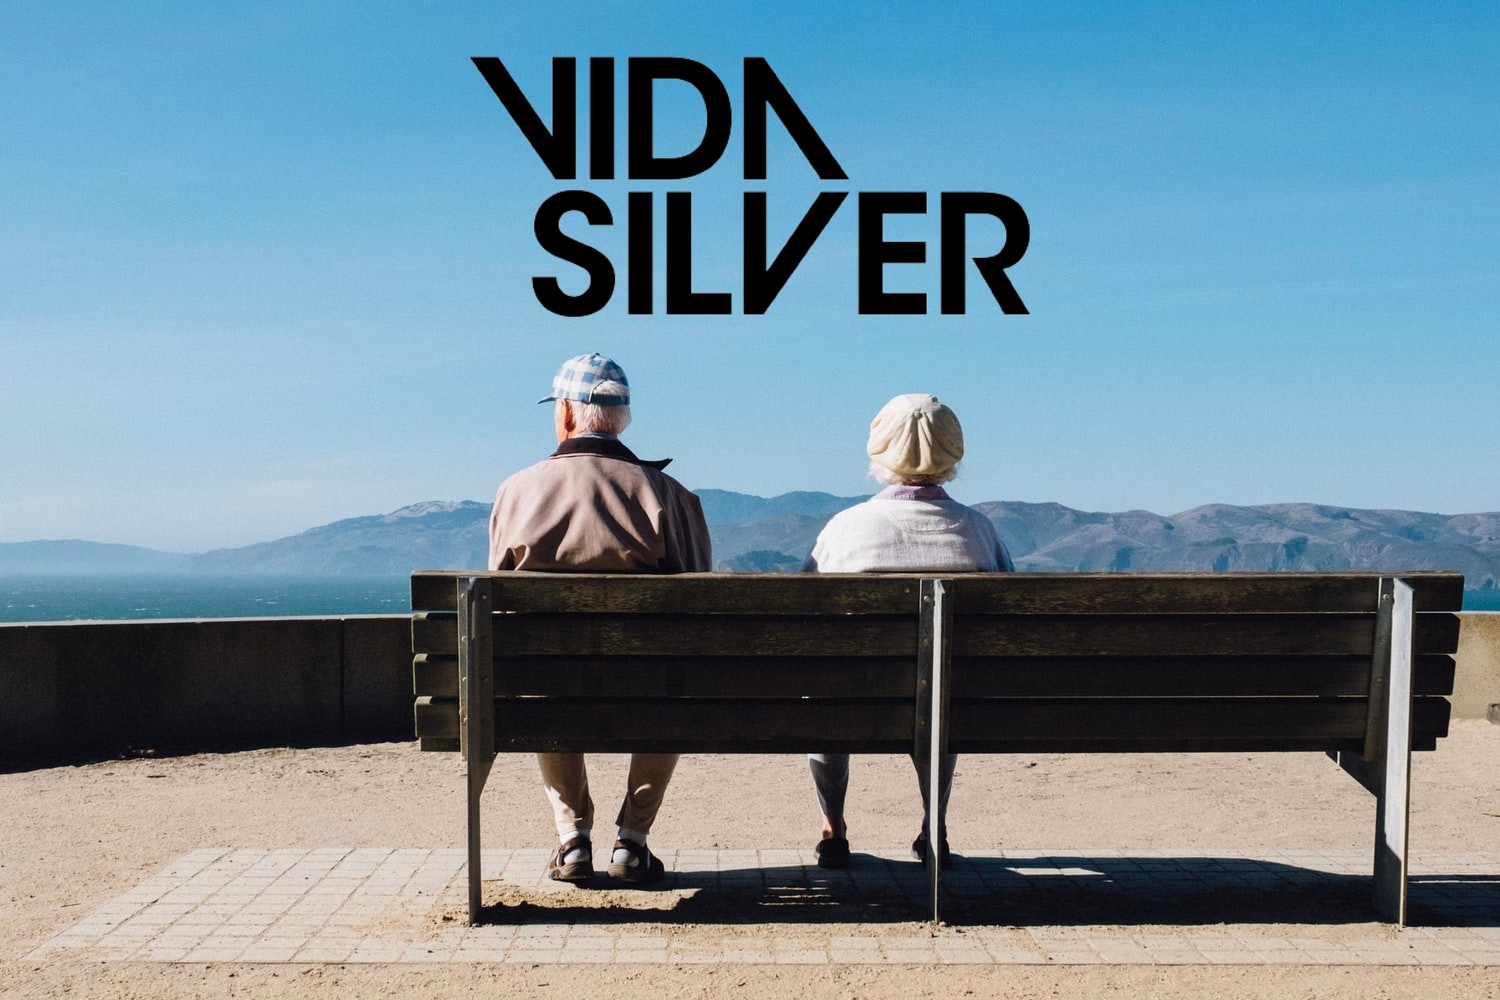 pareja senior sentada de espaldas en un banco y el logo de Vida Silver encima